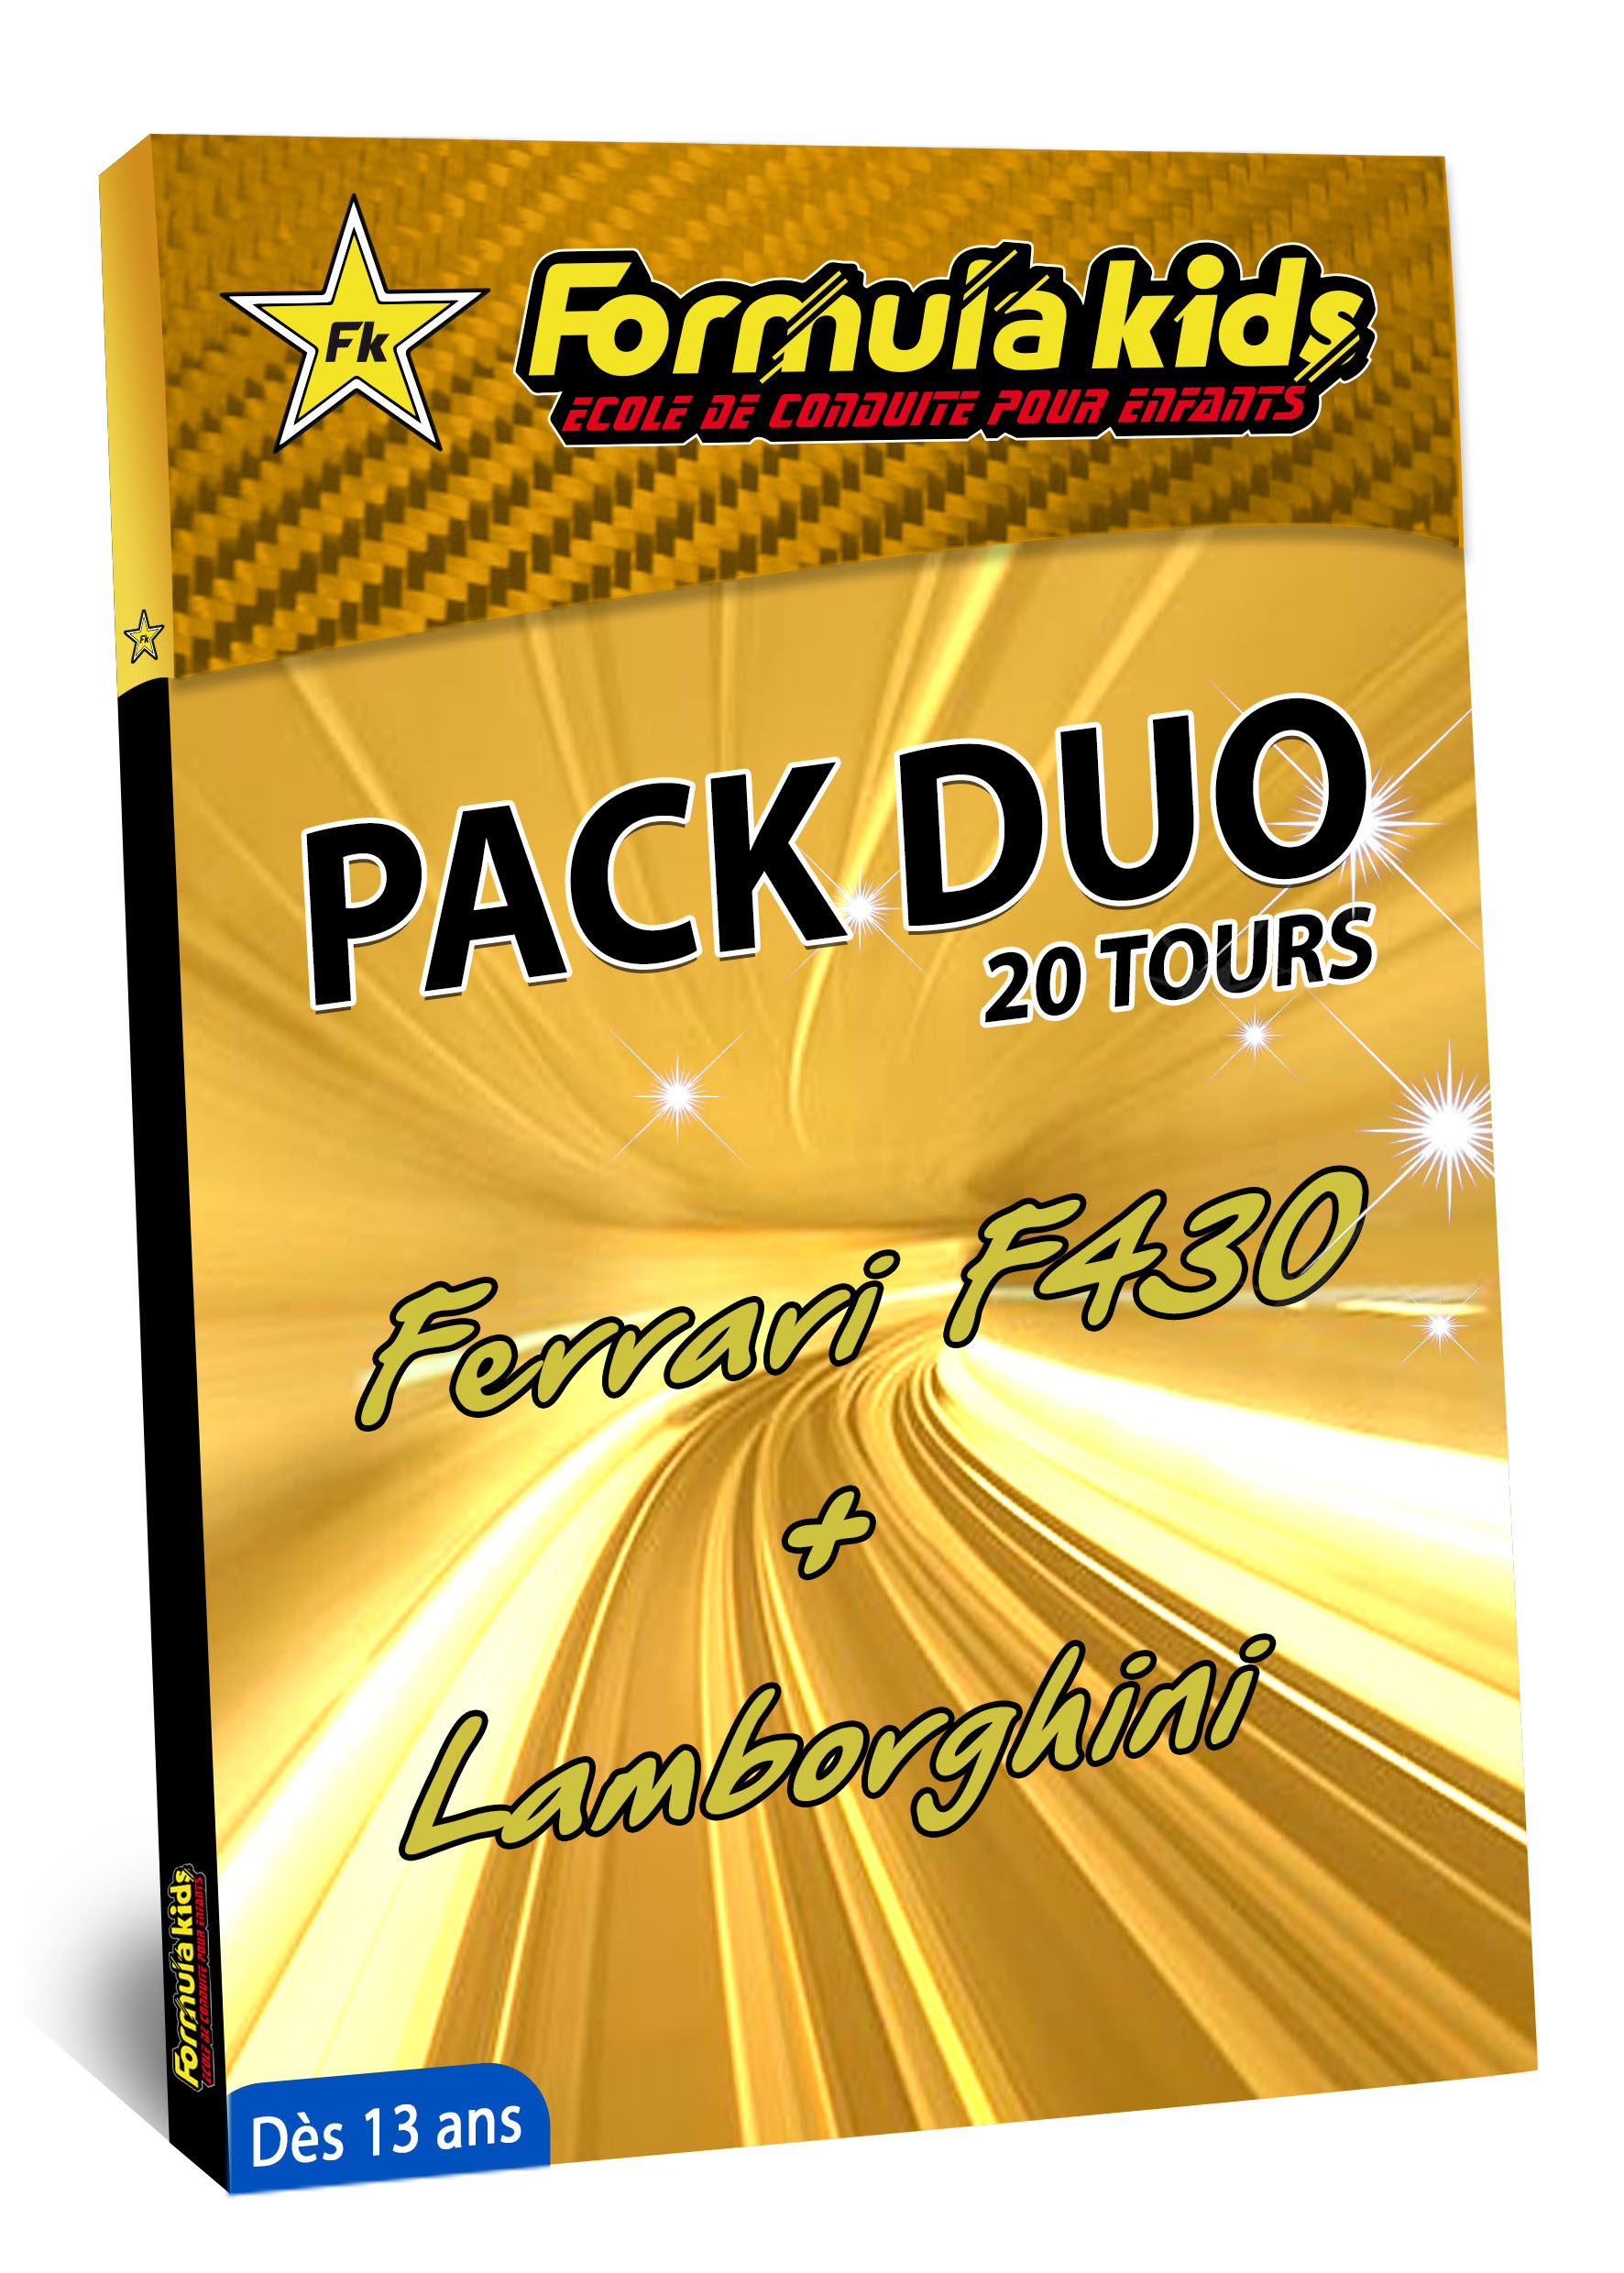 Pack Duo Or 20 Tours - Conduire une Ferrari Lamborghini dès 13 ans - Formula Kids - Stage de conduite enfant